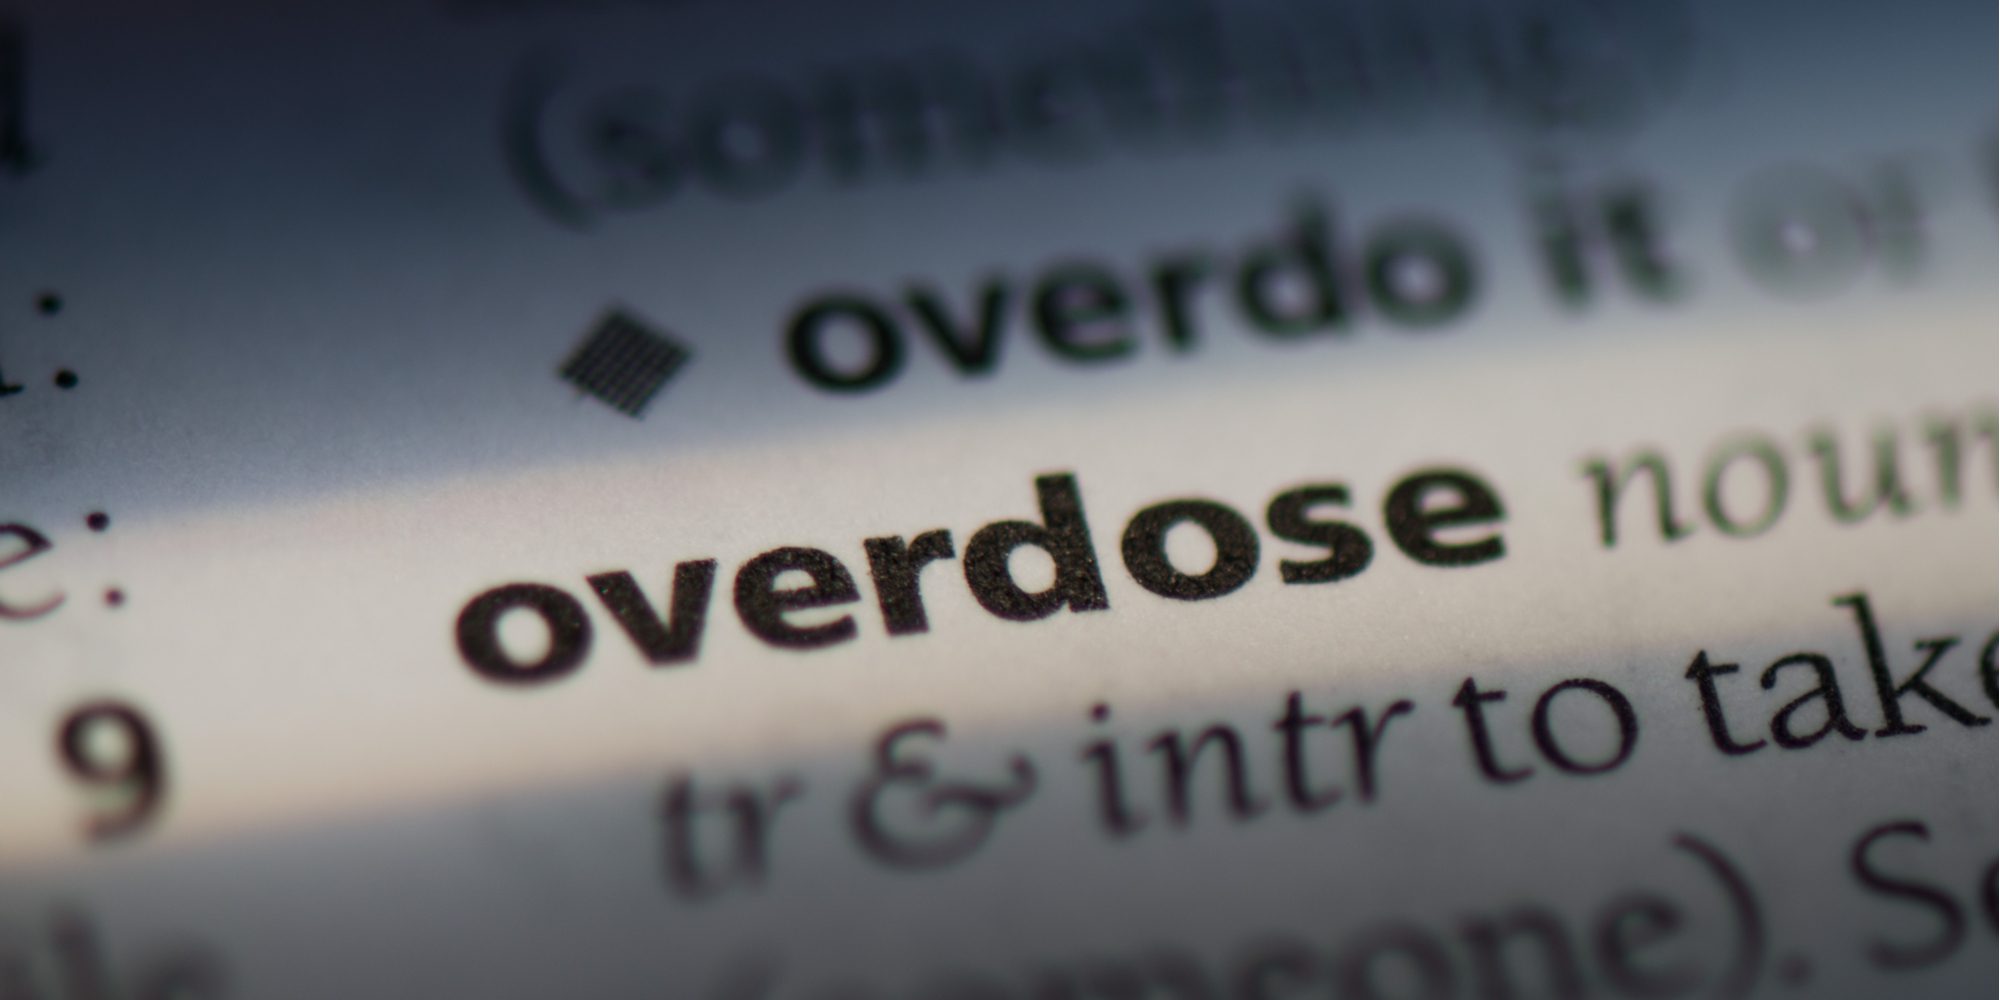 Florida Drug Overdose Deaths on the Rise: 2019 vs 2020